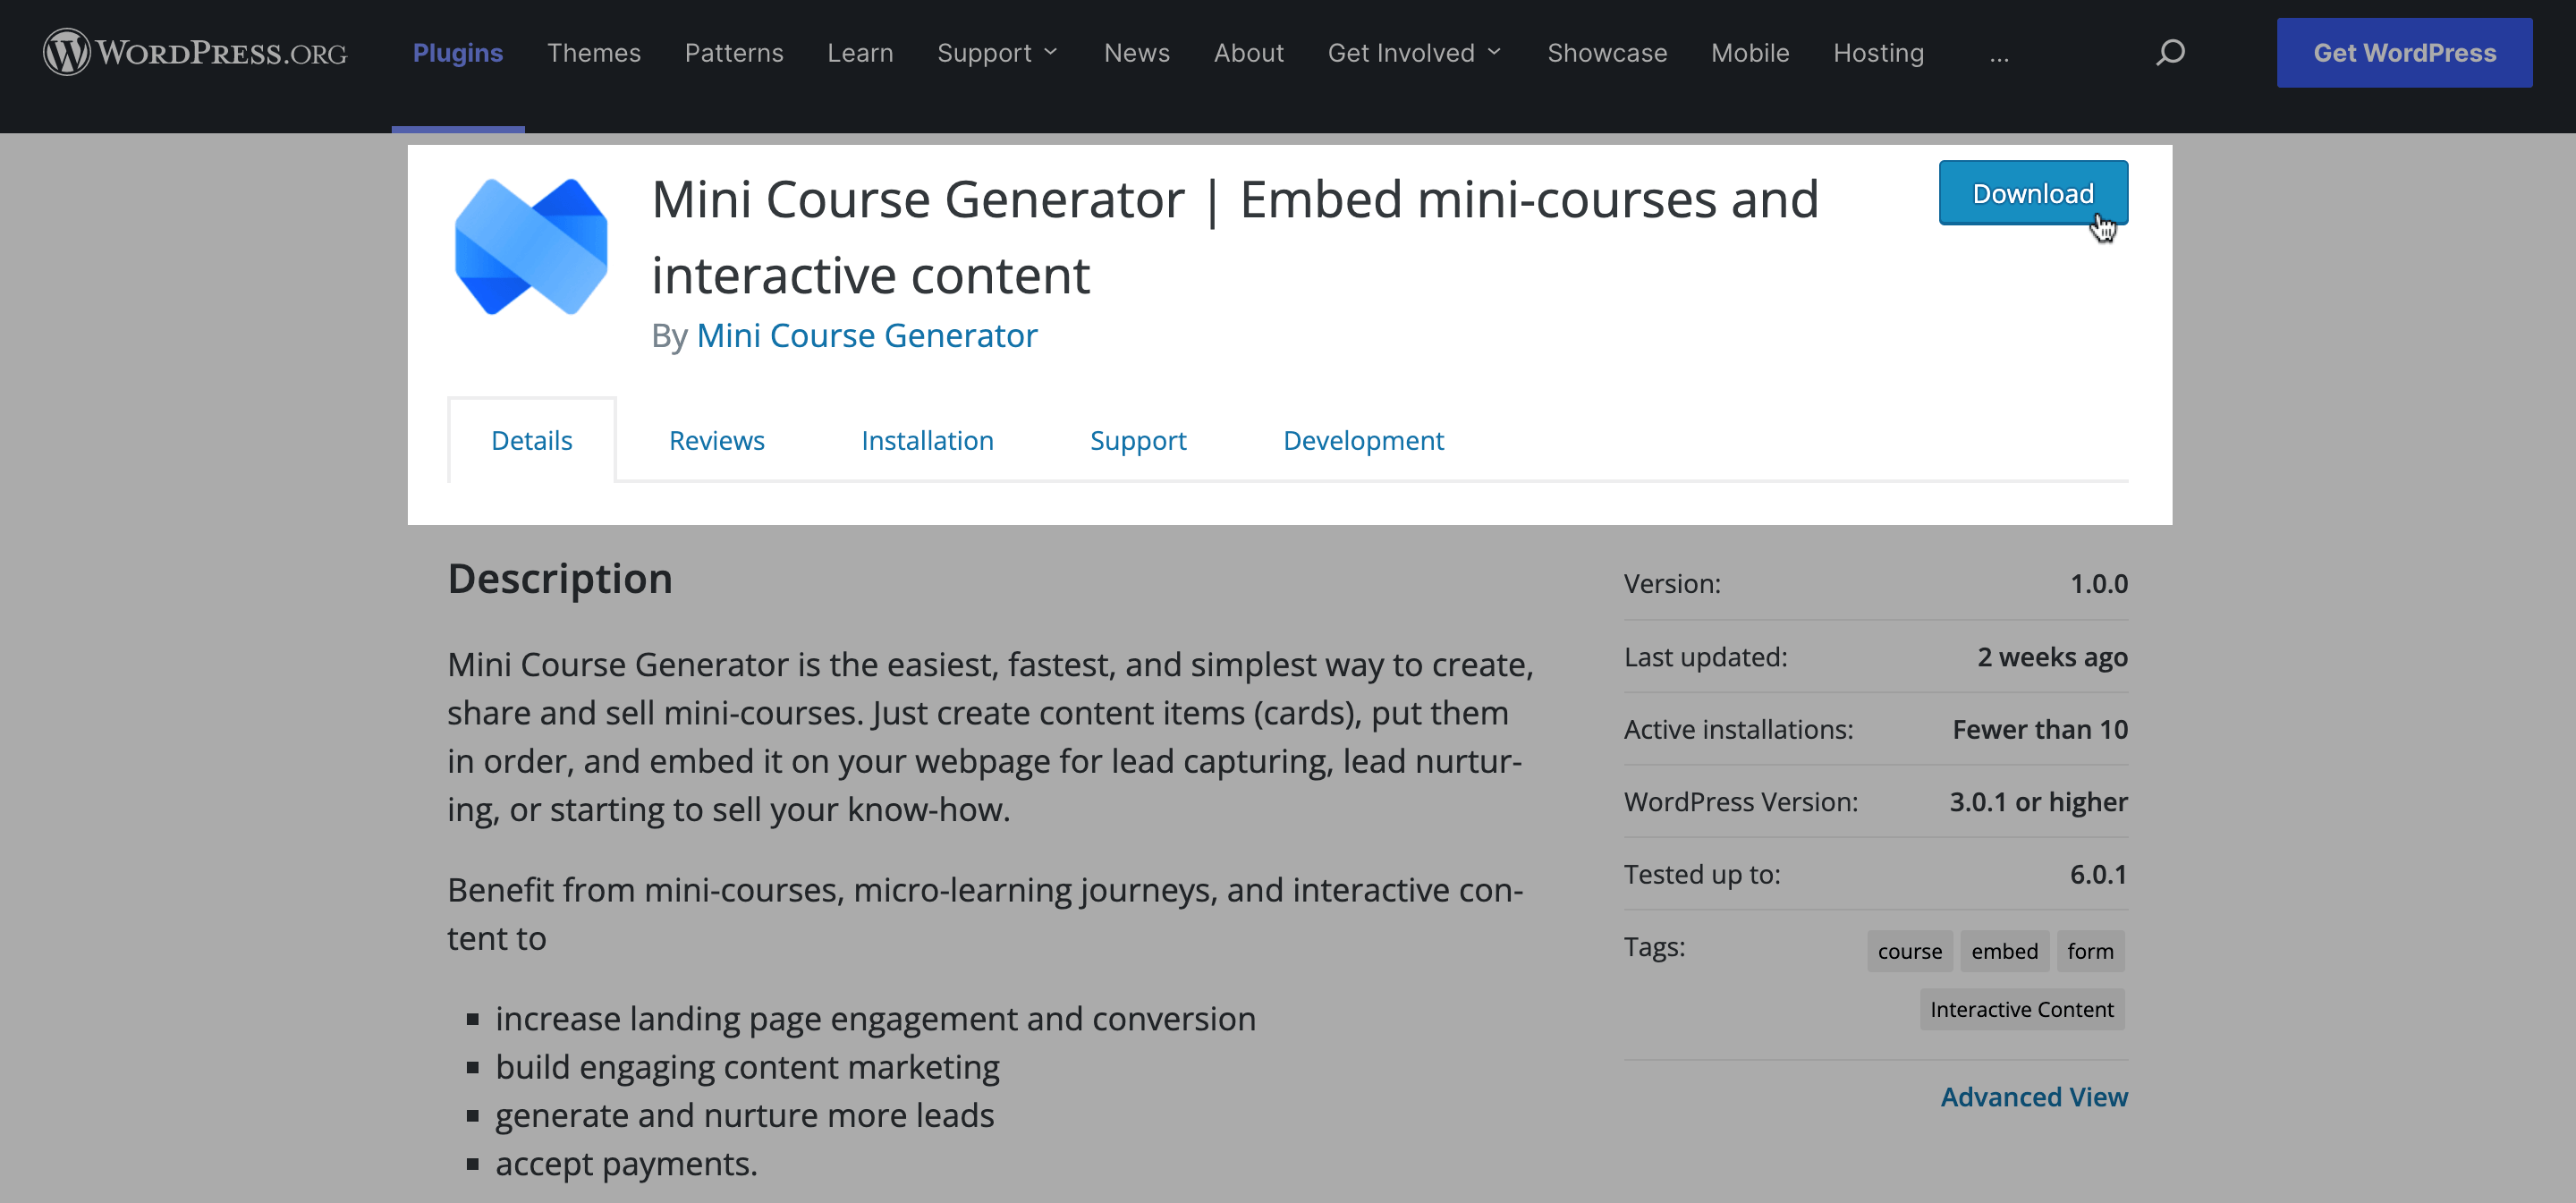 Mini Course Generator WordPress plug-in.